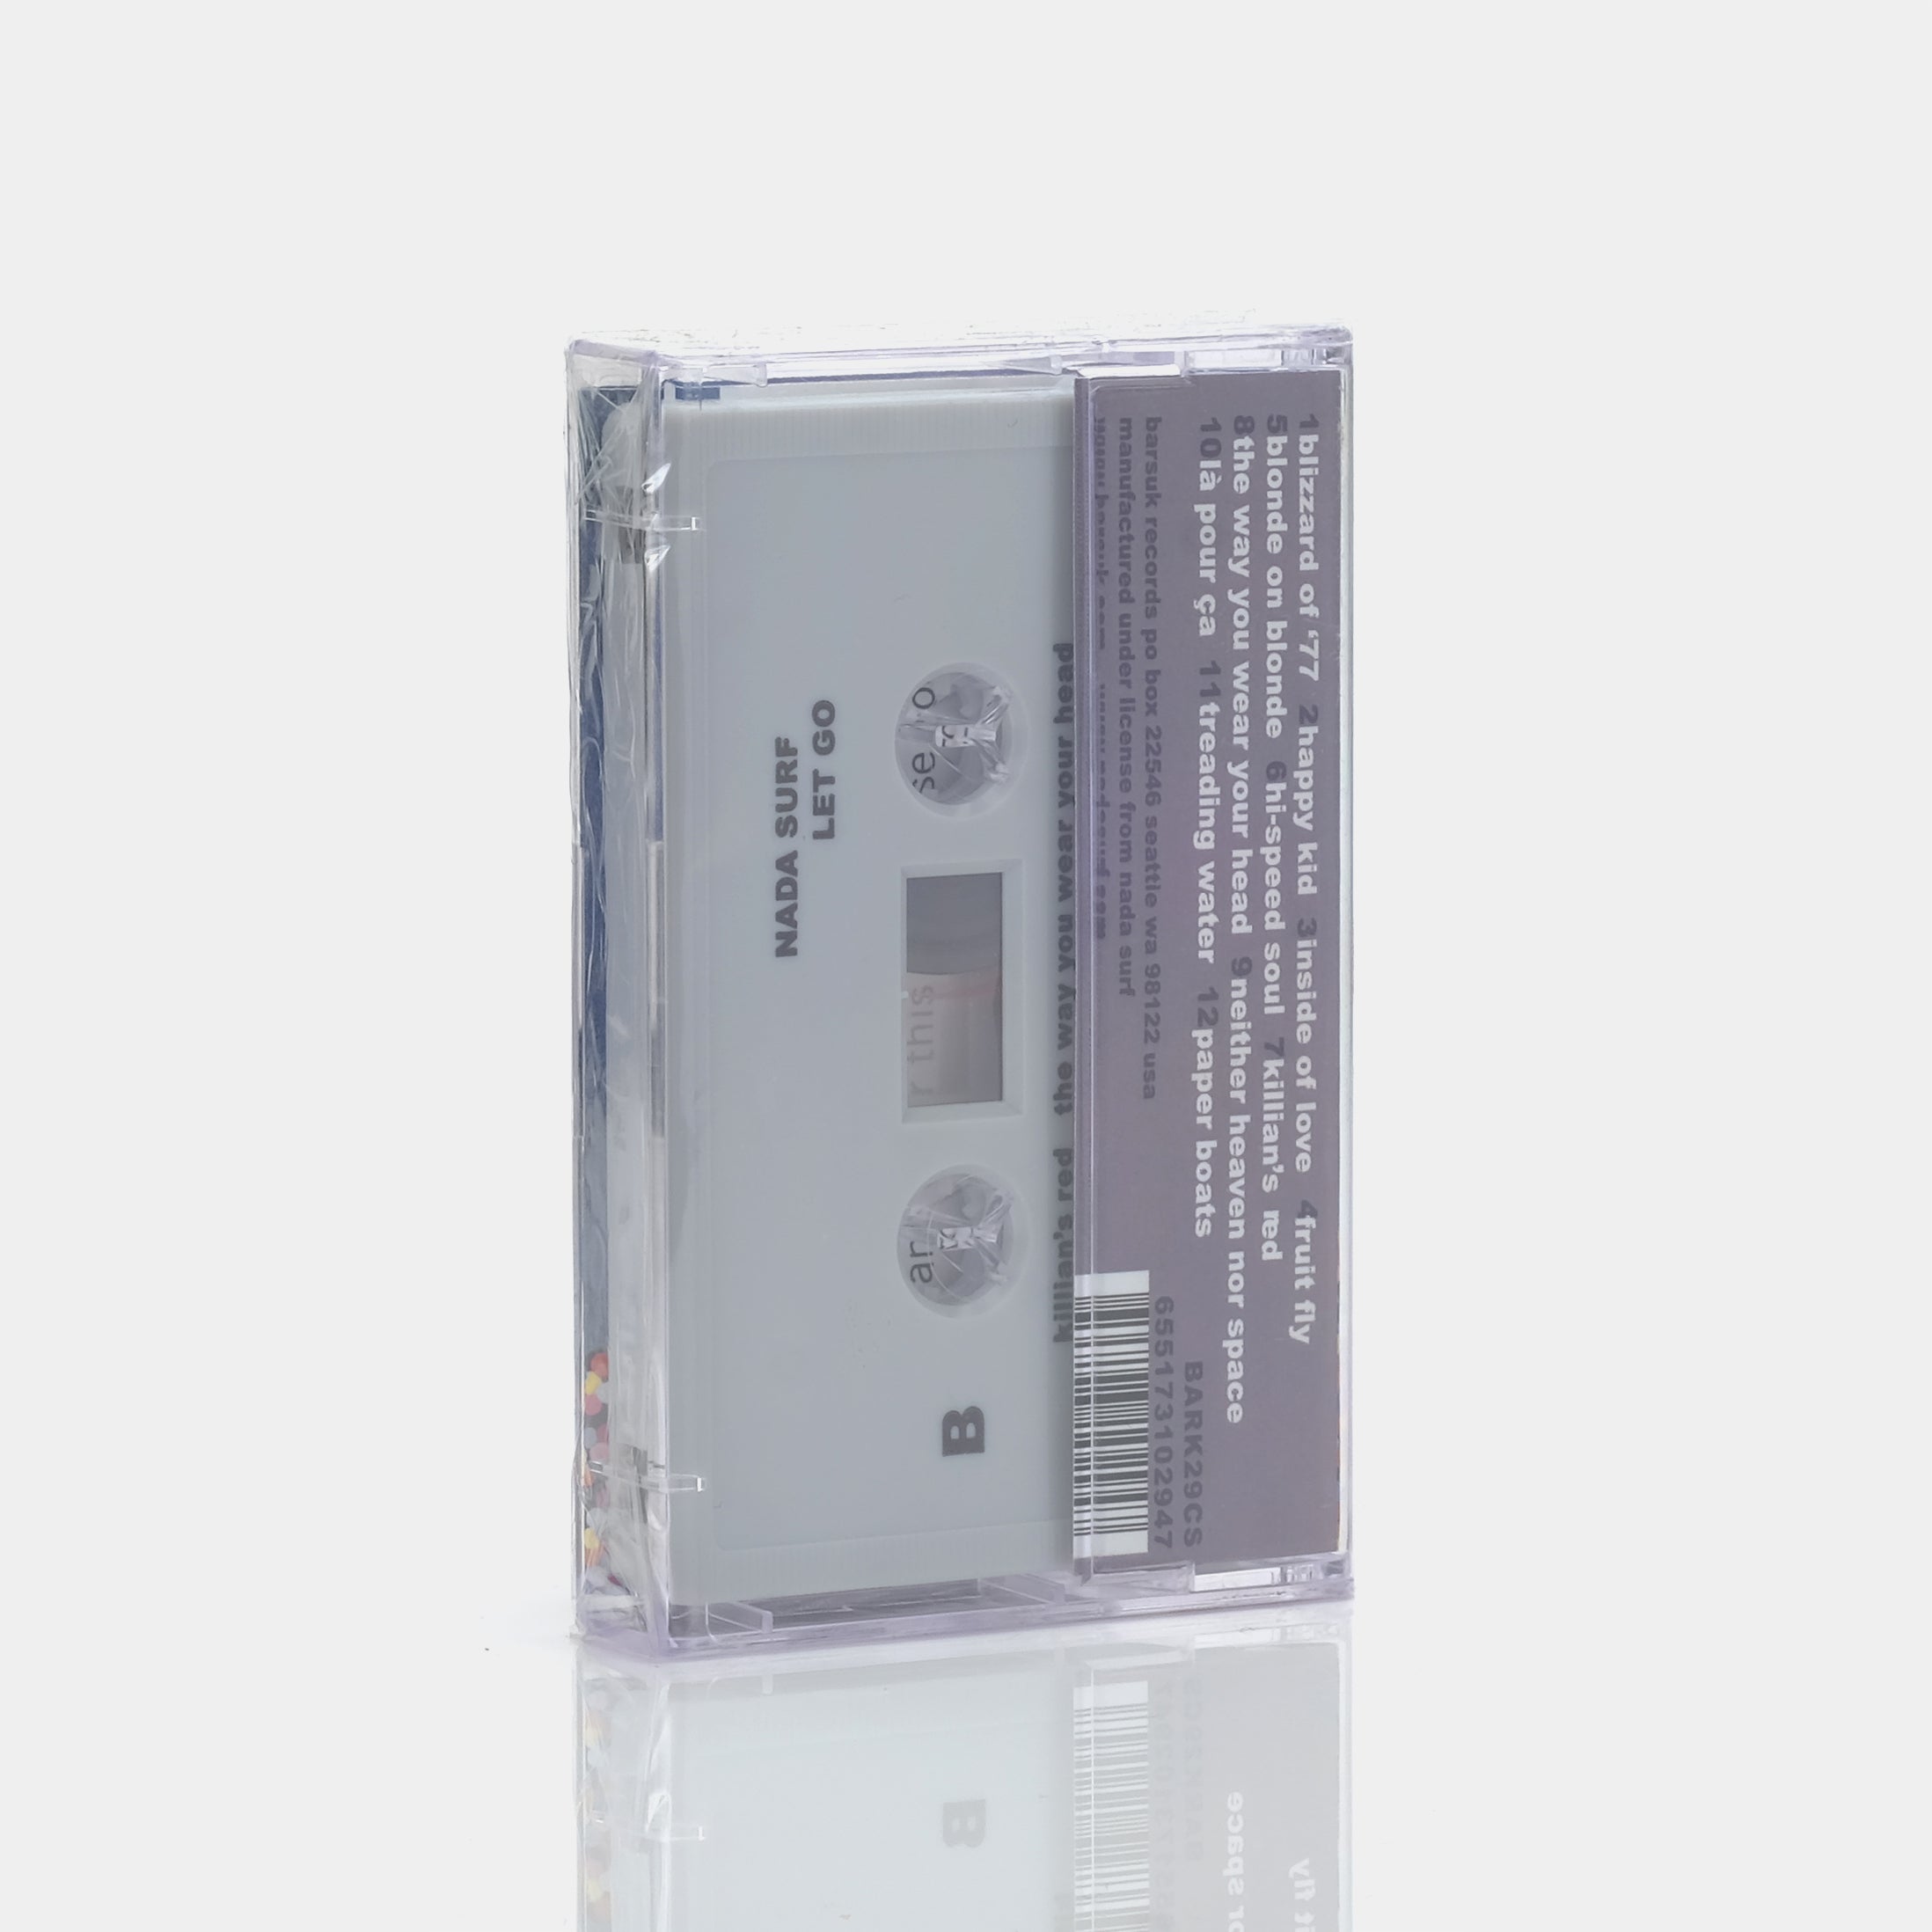 Nada Surf - Let Go Cassette Tape